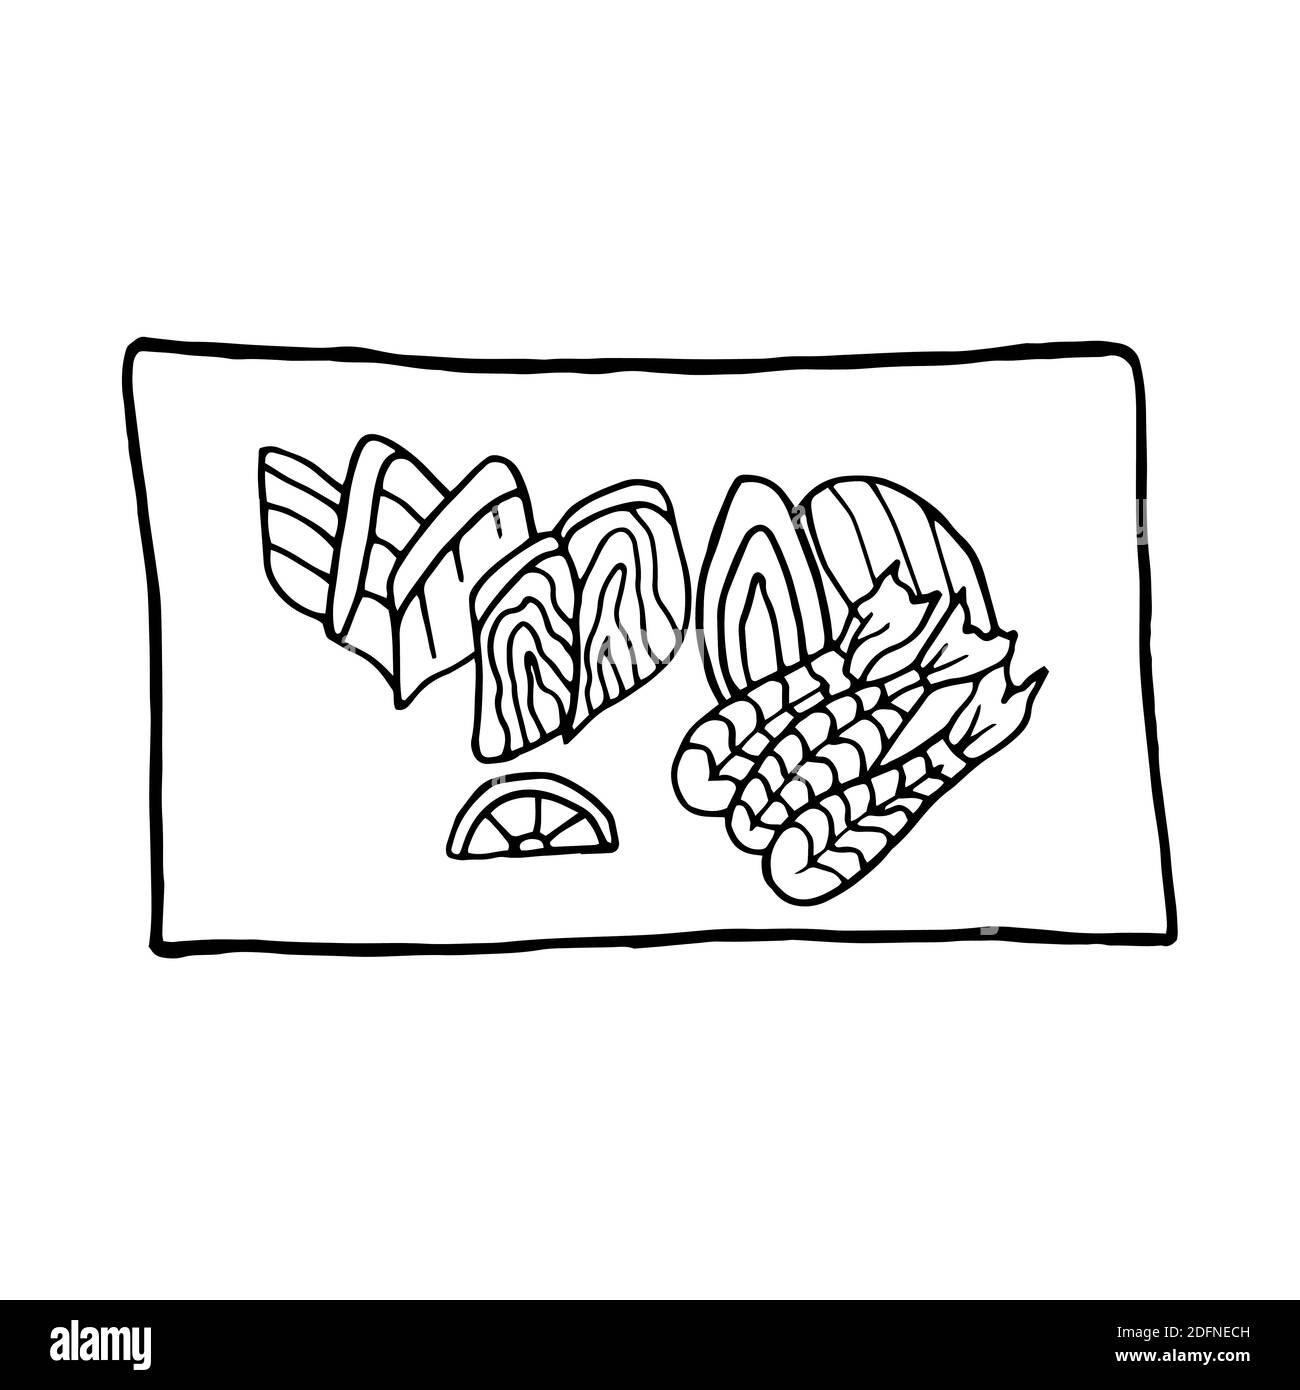 Vektor Hand gezeichnete Doodle Sashimi auf dem Teller. Japanisches Gericht. Design Skizzenelement für Menü Café, Restaurant, Etikett und Verpackung. Illustrati Stock Vektor